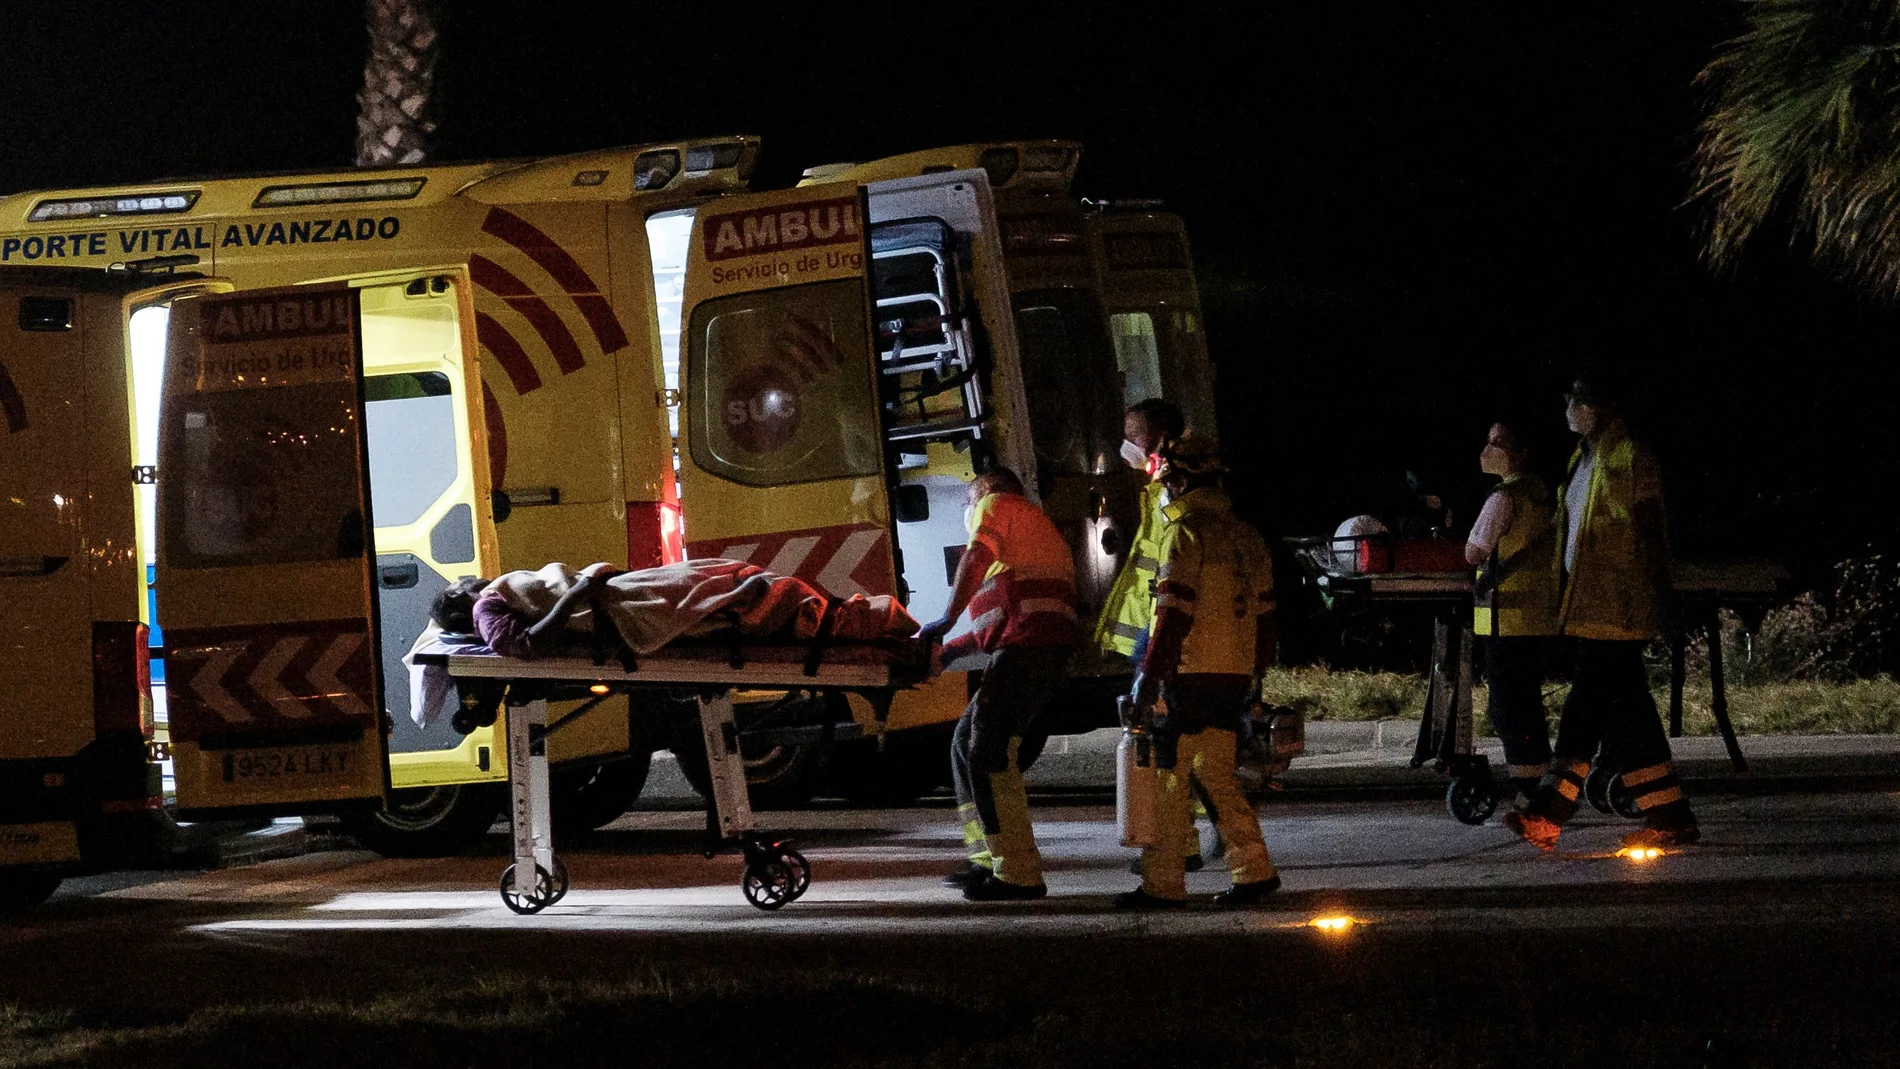 Rozando las 0.00 horas llegó un helicóptero del servicio de búsqueda y rescate (SAR) del Ejército del Aire al helipuerto del Hospital Doctor Negrín de Las Palmas de Gran Canaria, con tres de los ocupantes de la patera